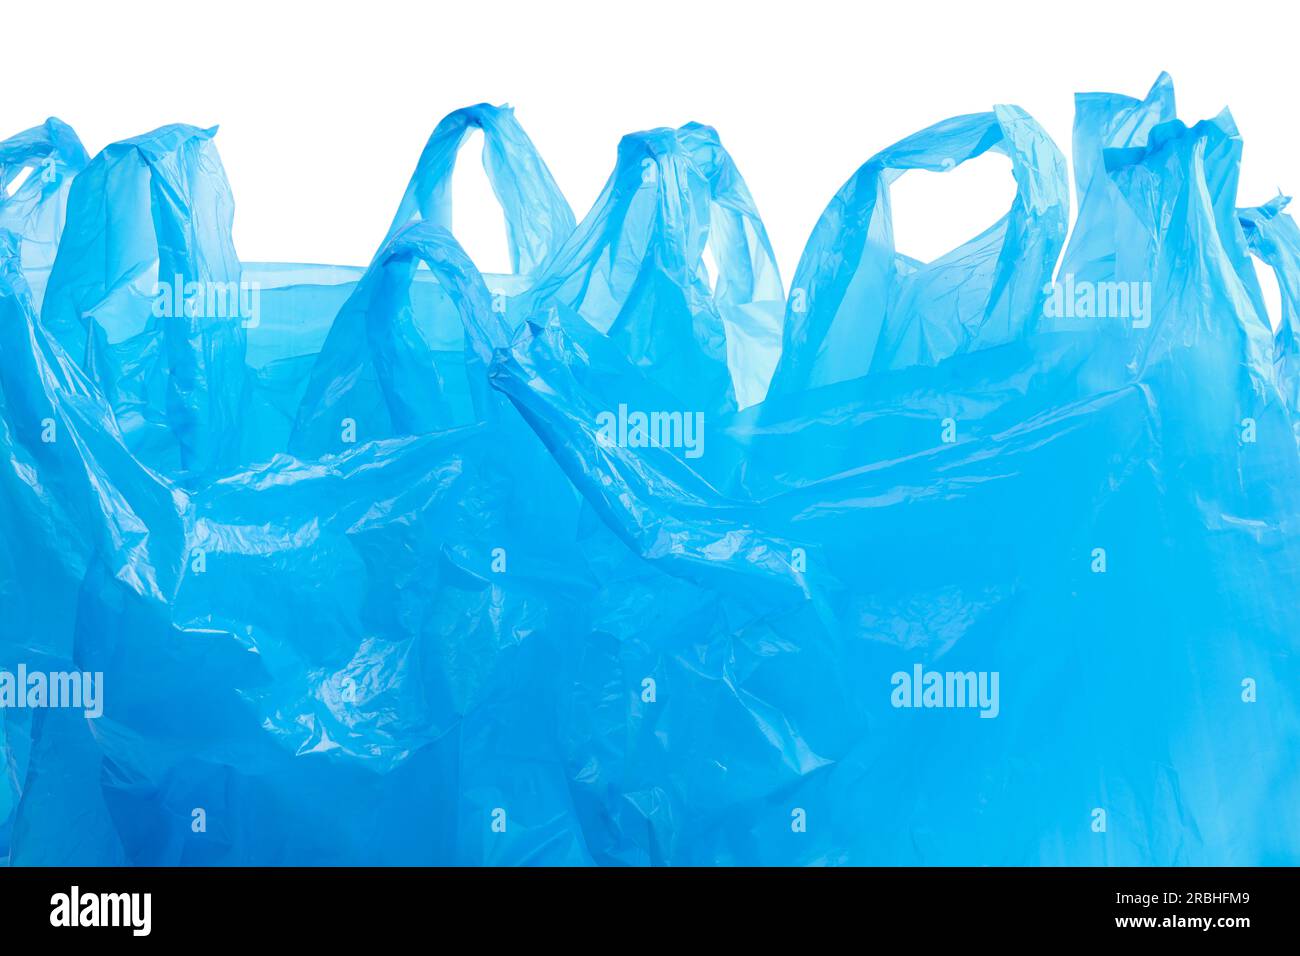 Molti sacchetti di plastica blu chiaro isolati su bianco Foto Stock